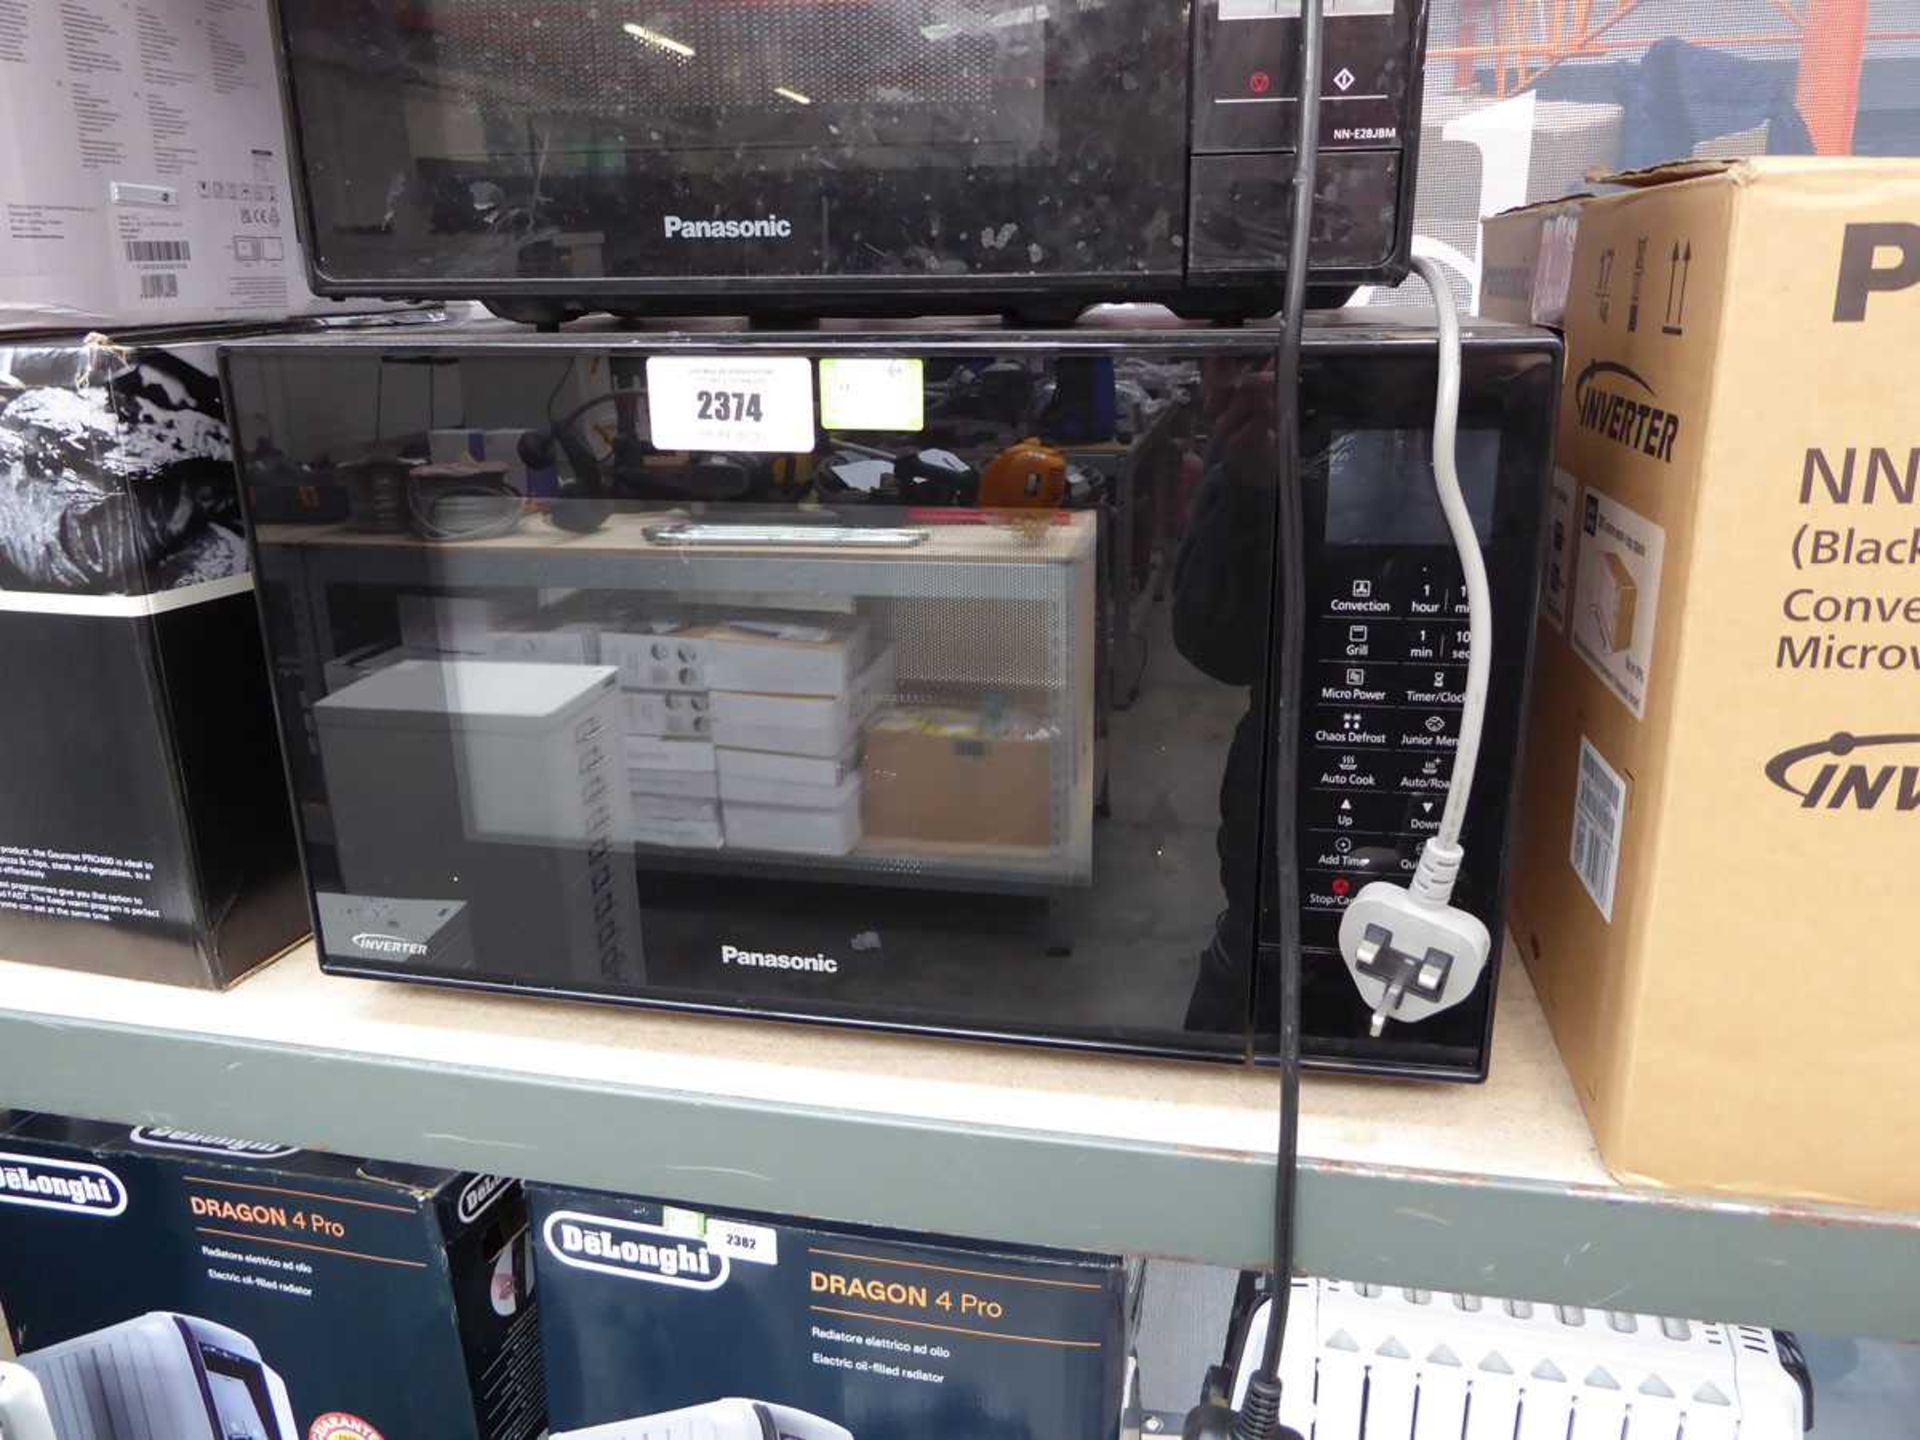 +VAT Panasonic inverter microwave (MN-CT56JB) in black